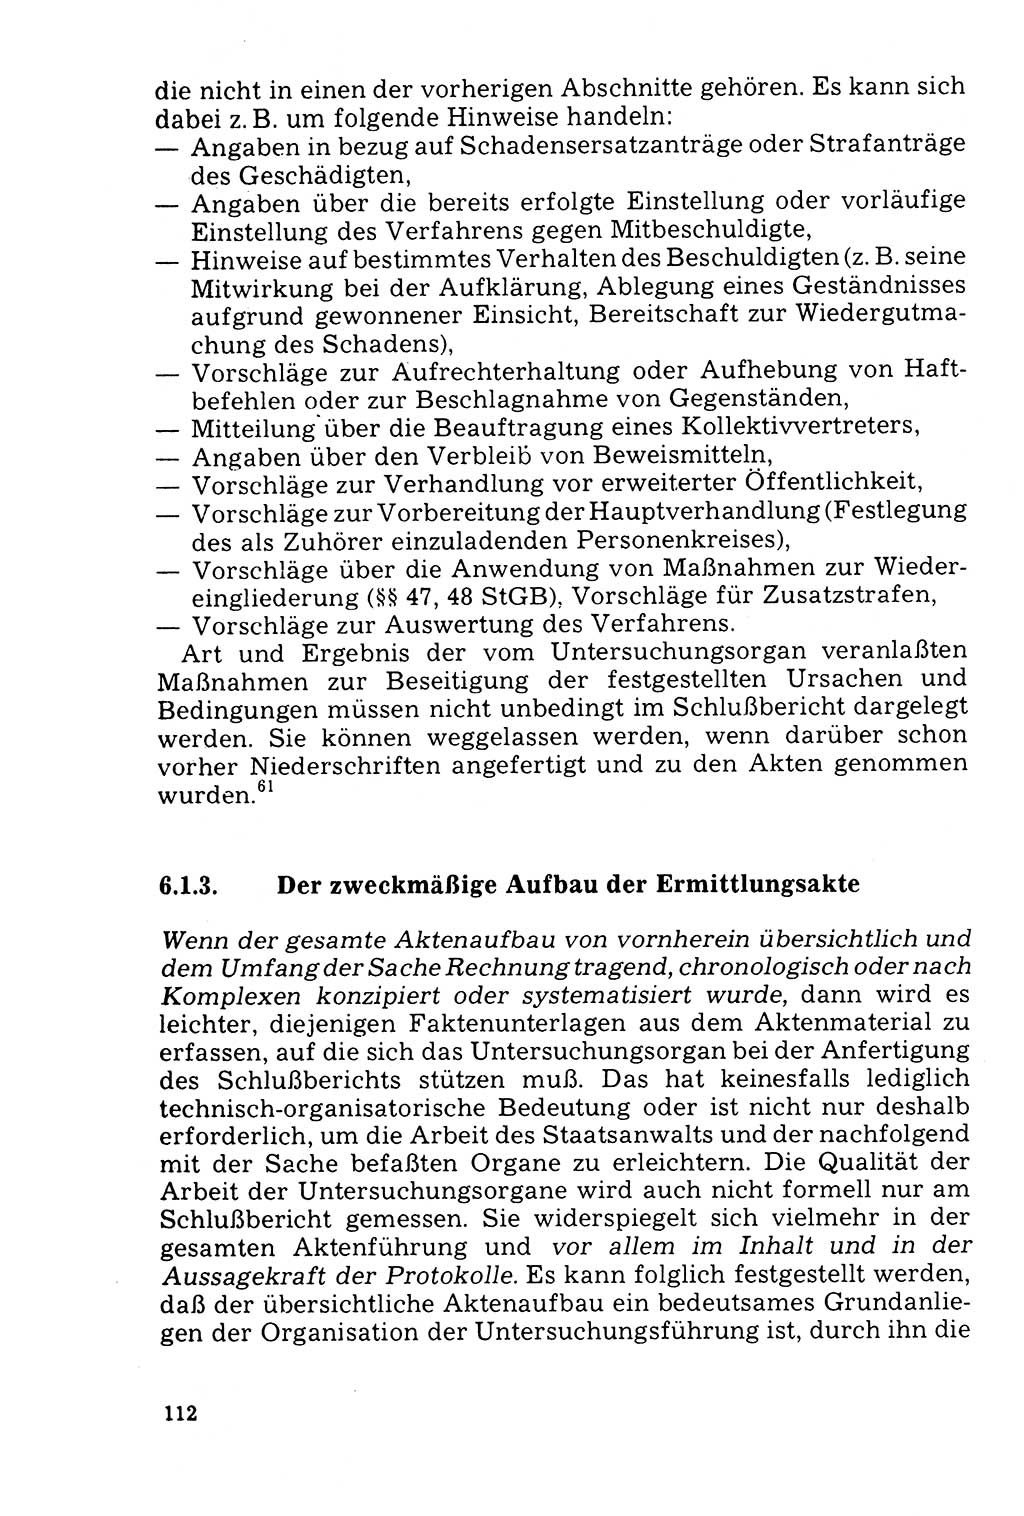 Der Abschluß des Ermittlungsverfahrens [Deutsche Demokratische Republik (DDR)] 1978, Seite 112 (Abschl. EV DDR 1978, S. 112)